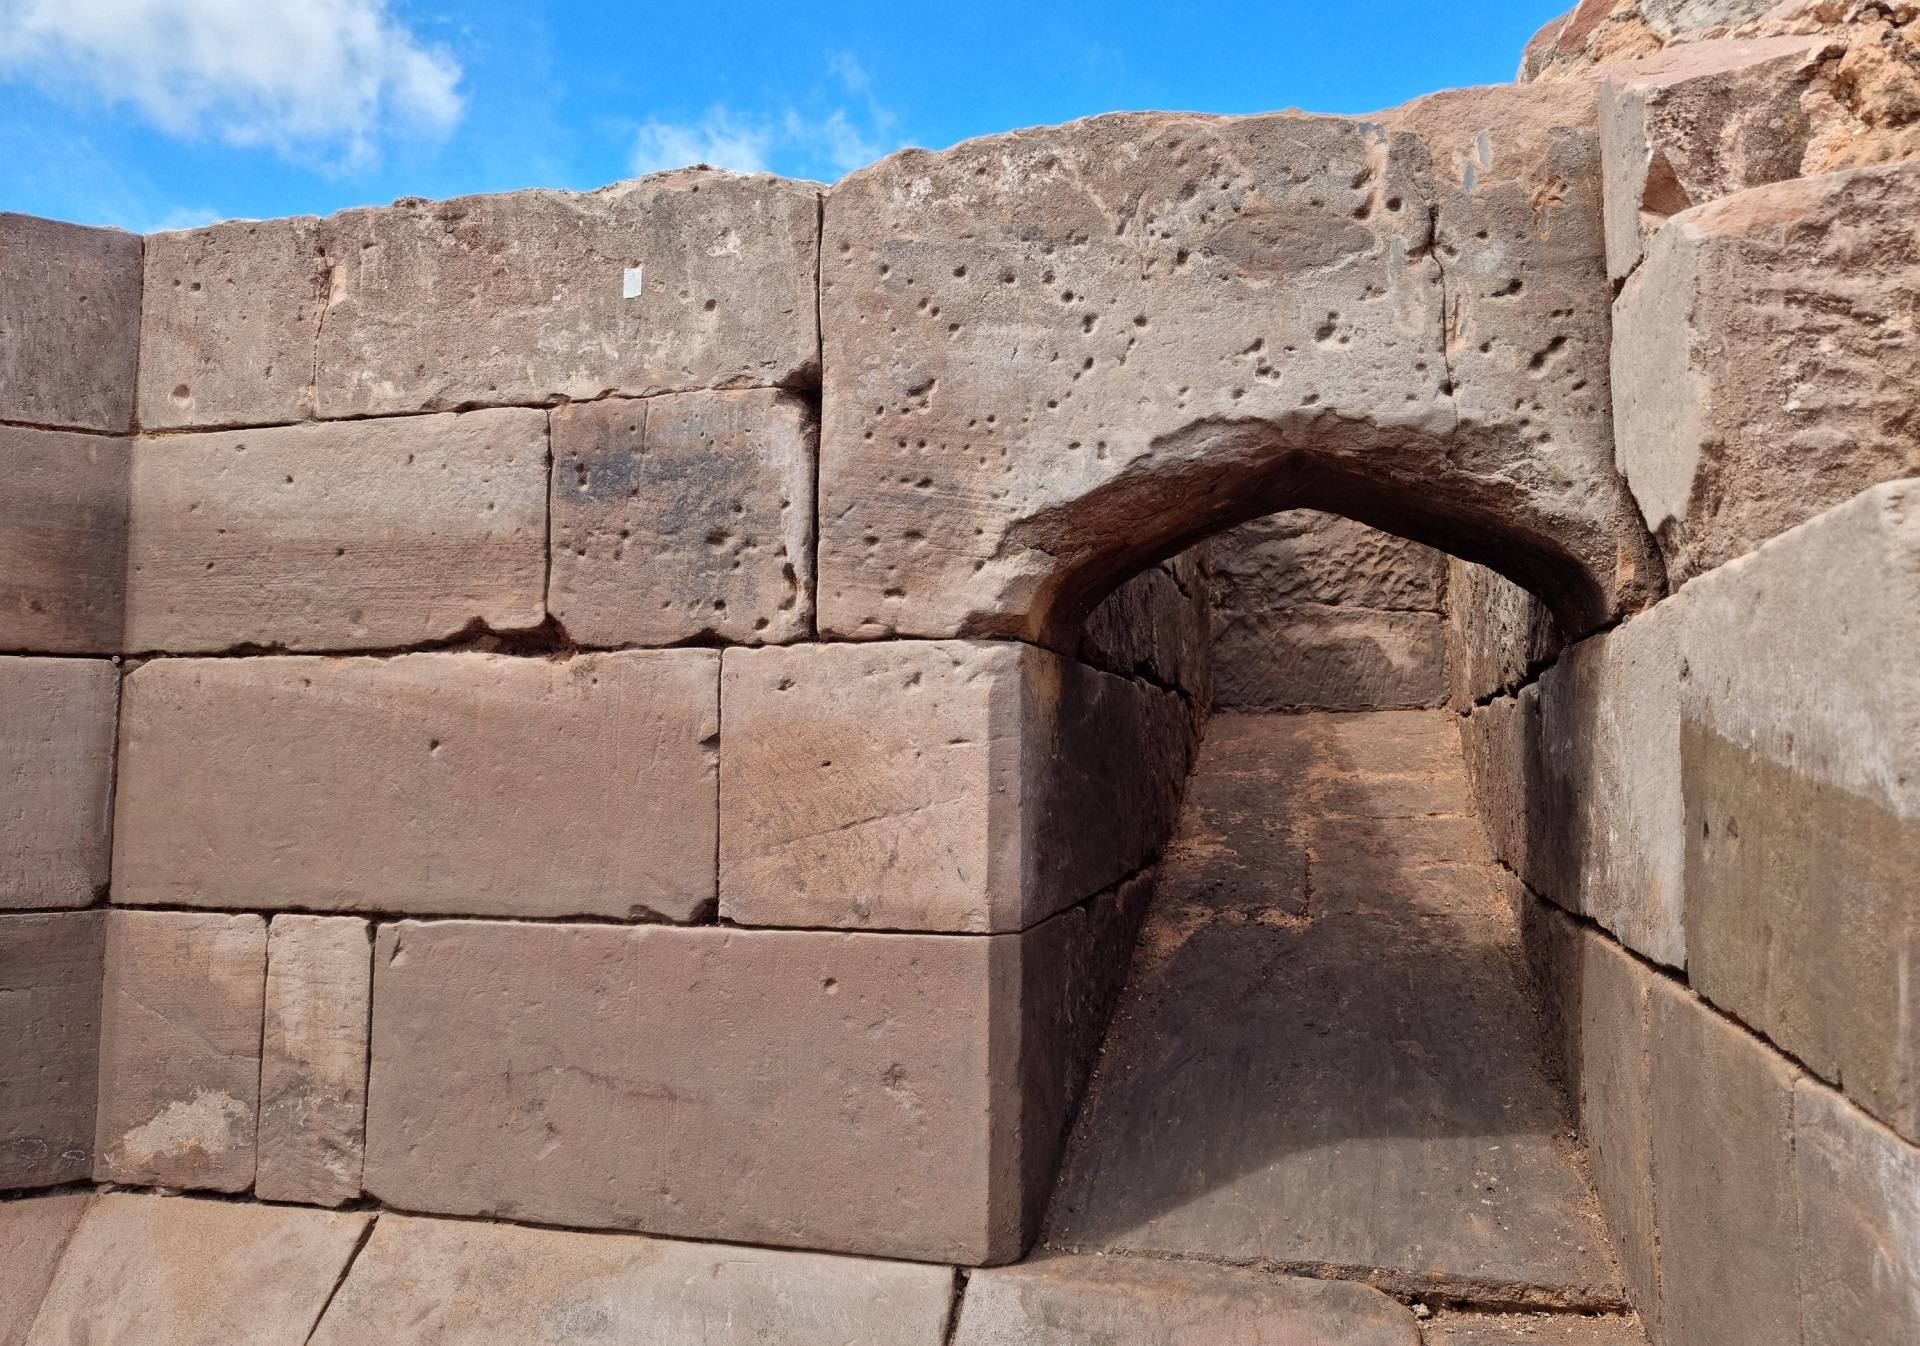 De buitenmuur van een van de ontdekte torens, met daarop de kogelgaten duidelijk zichtbaar